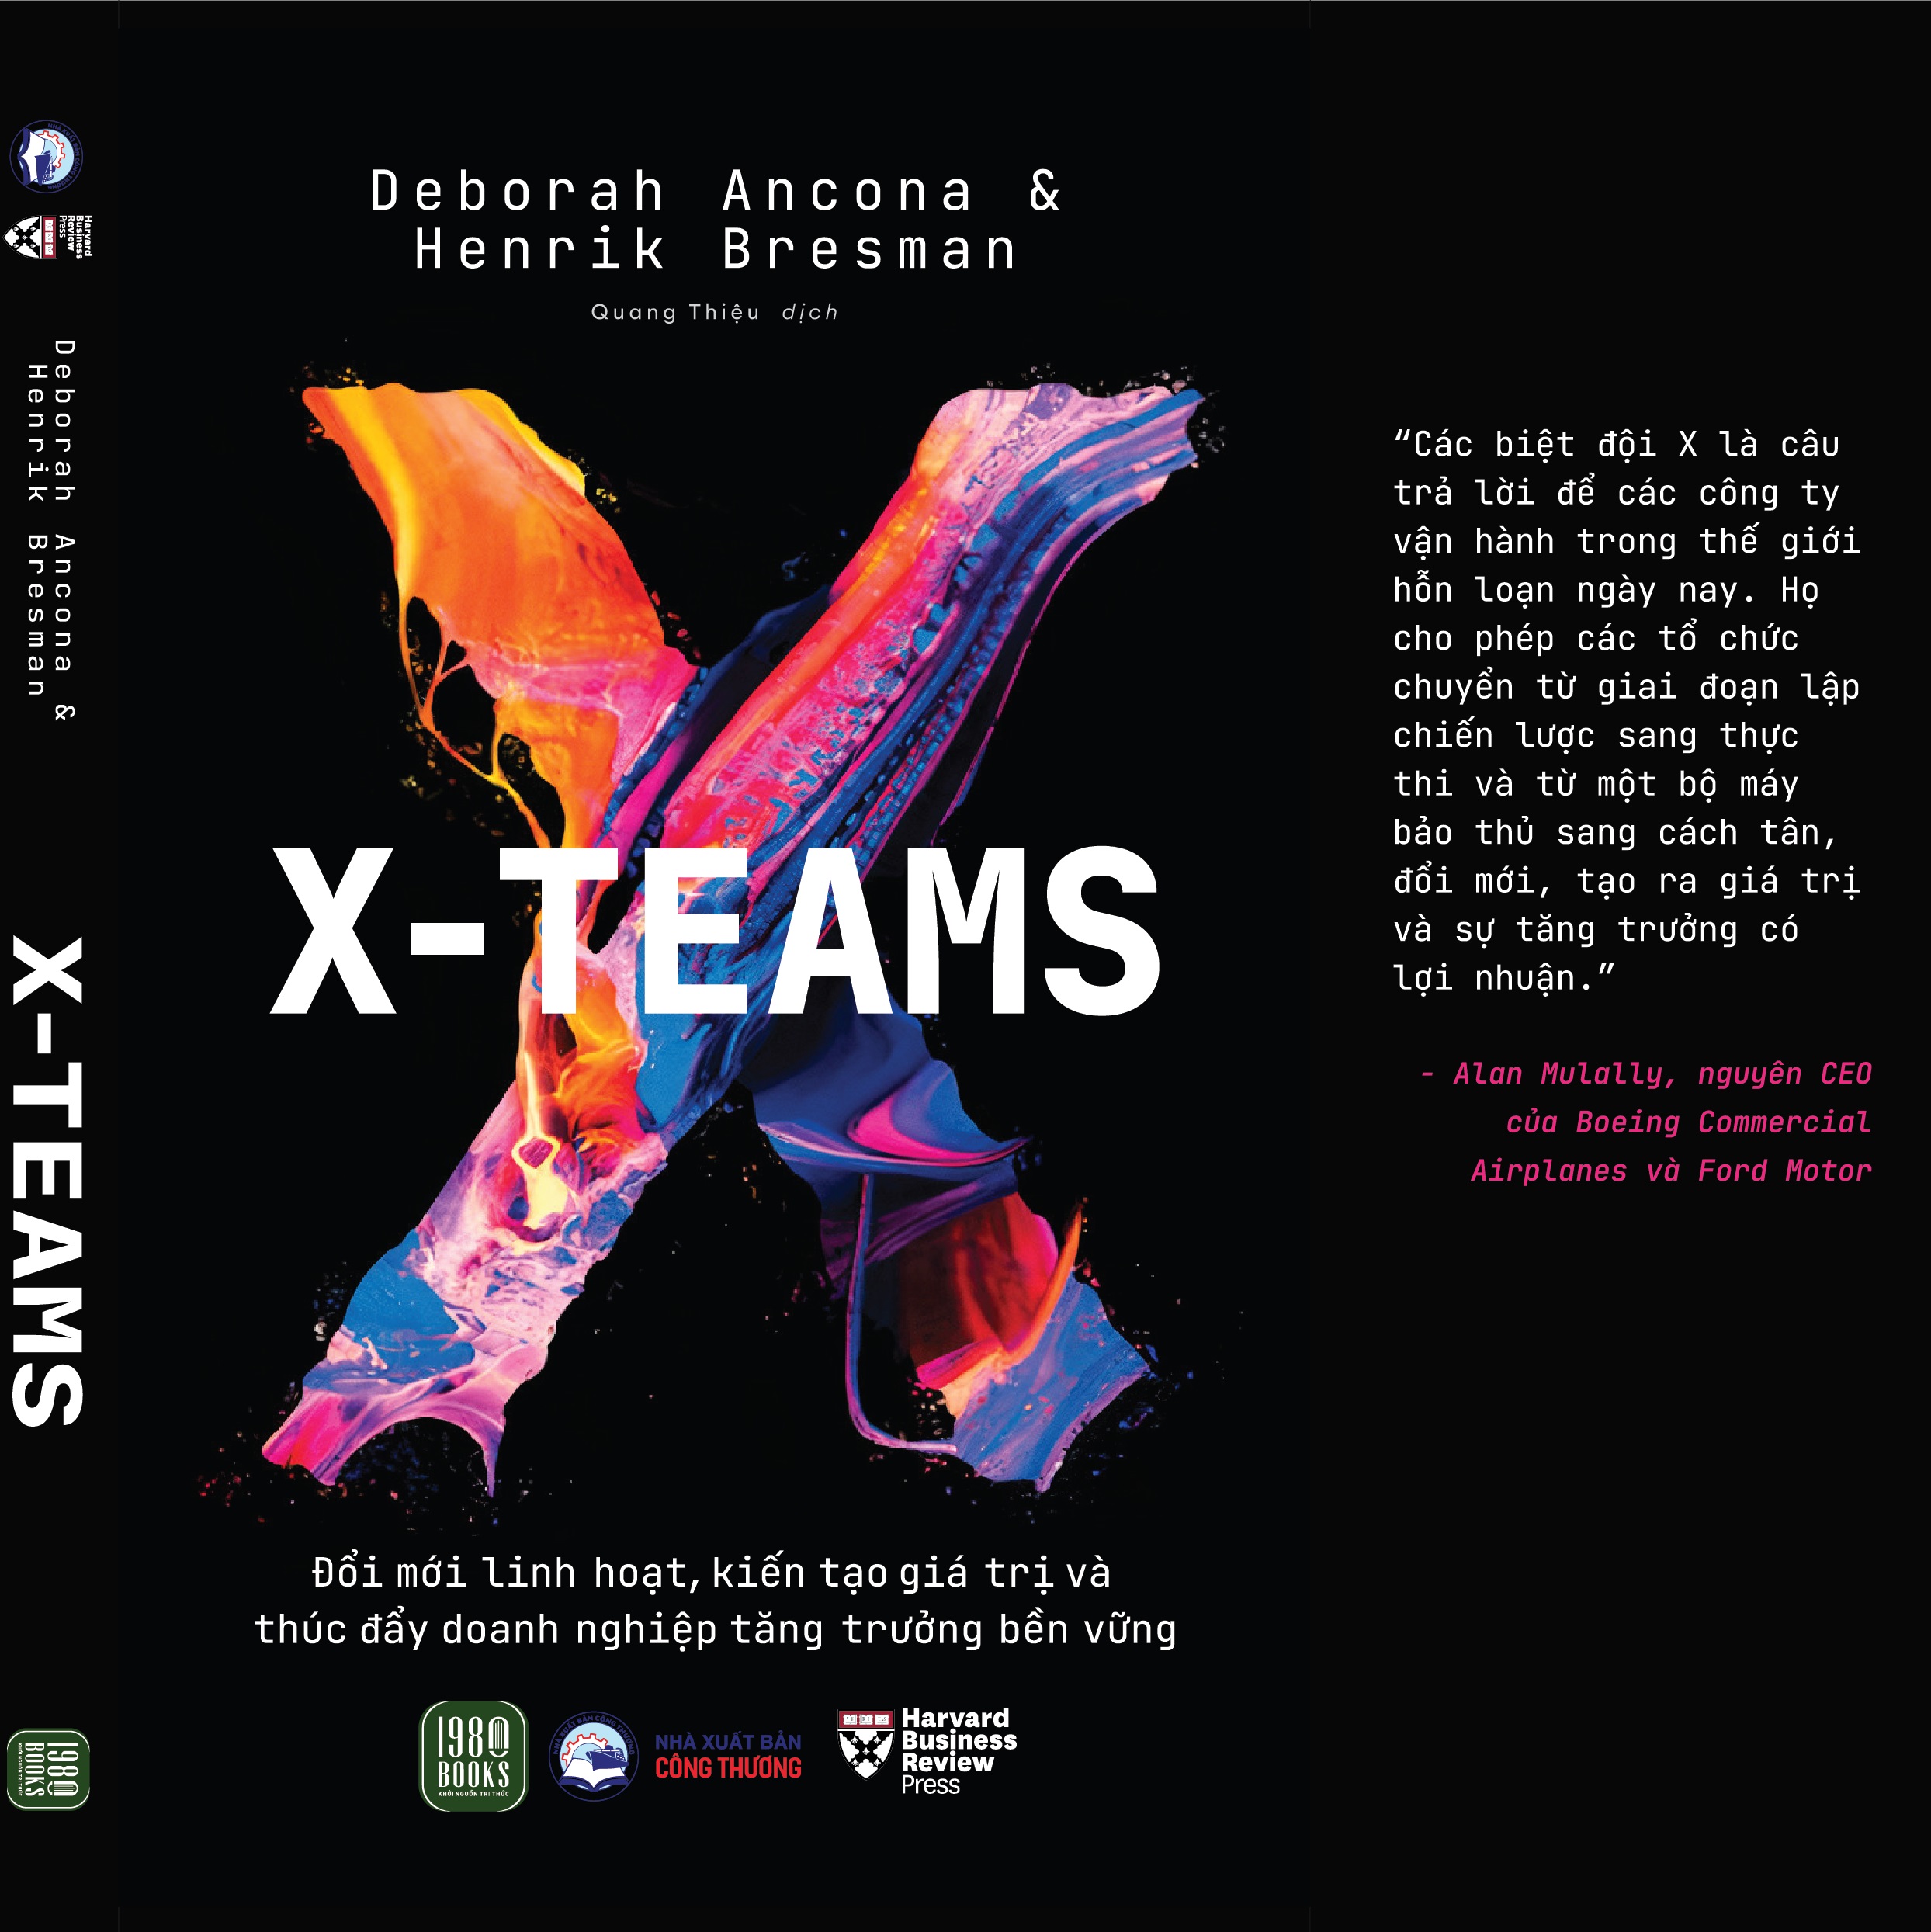 Sách - X-TEAMS Đổi mới linh hoạt, kiến tạo giá trị và thúc đẩy doanh nghiệp tăng trưởng bền vững